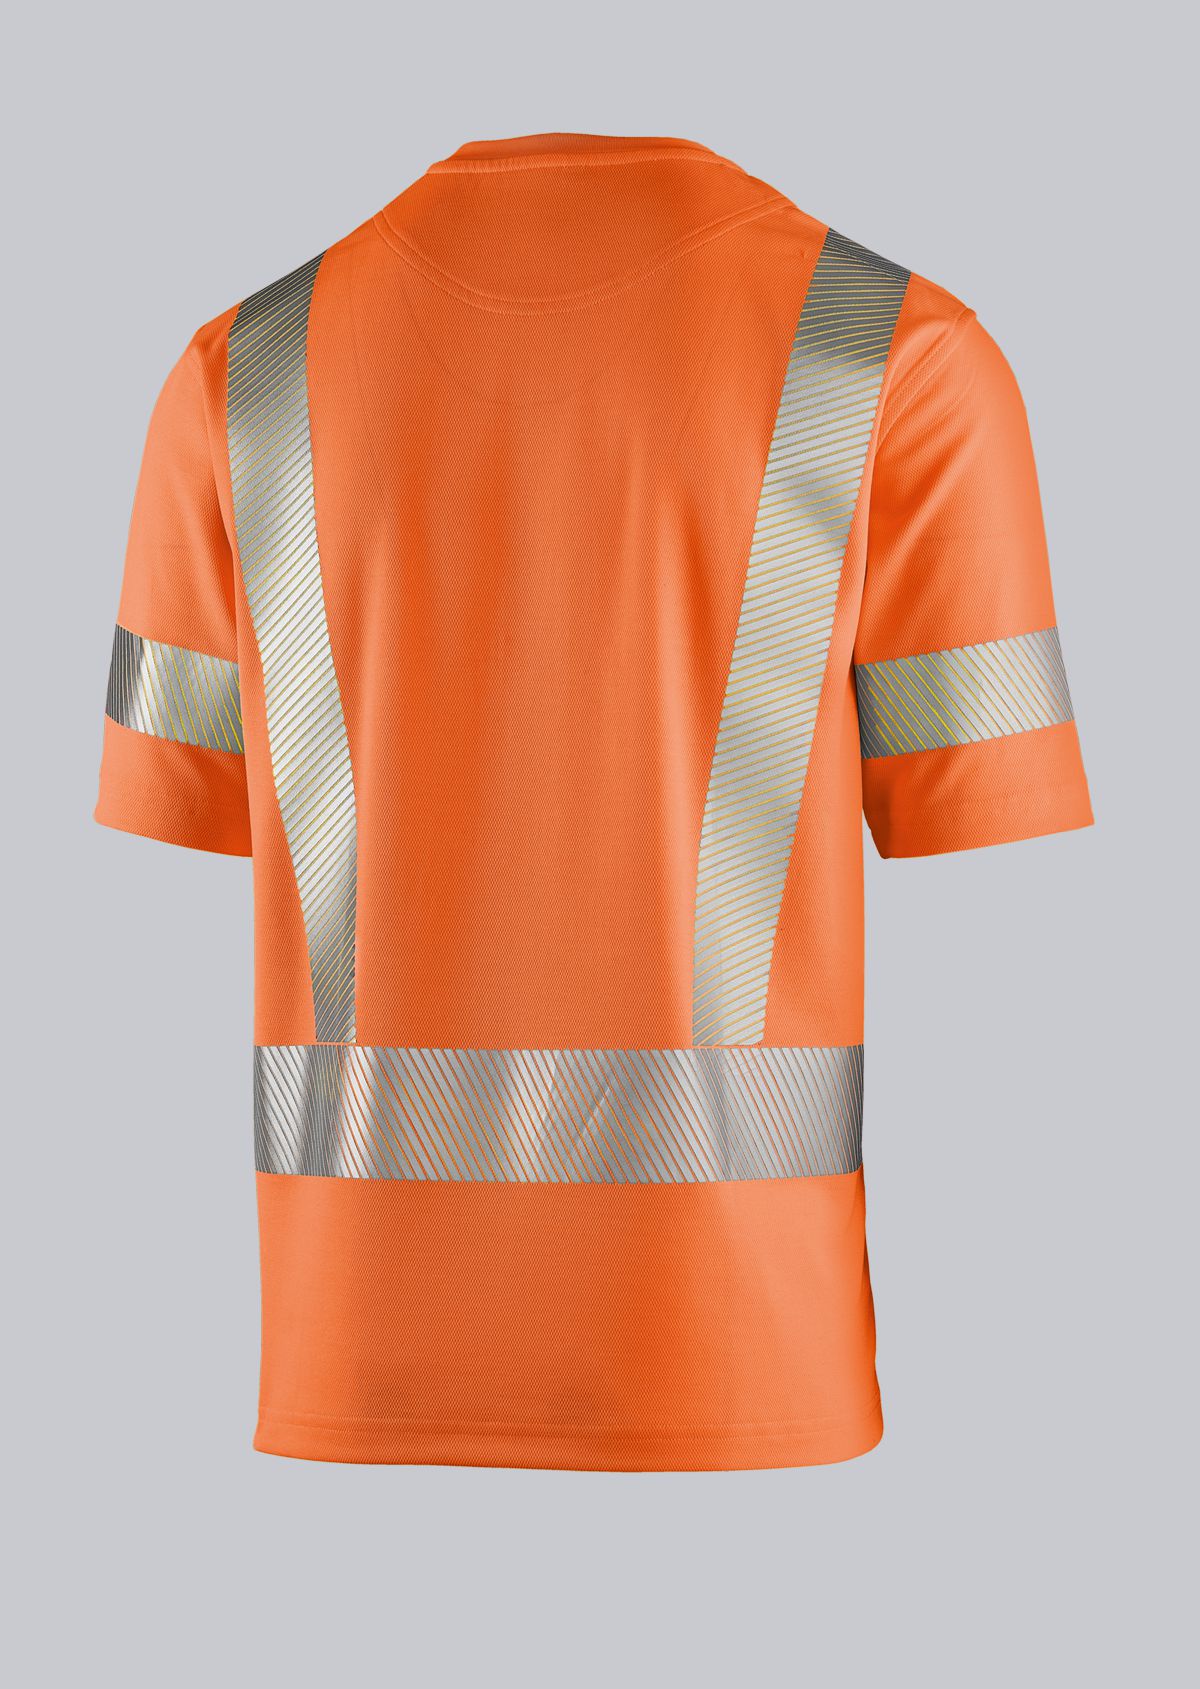 BP® T-shirt haute visibilité, bandes réfléchissantes aux manches